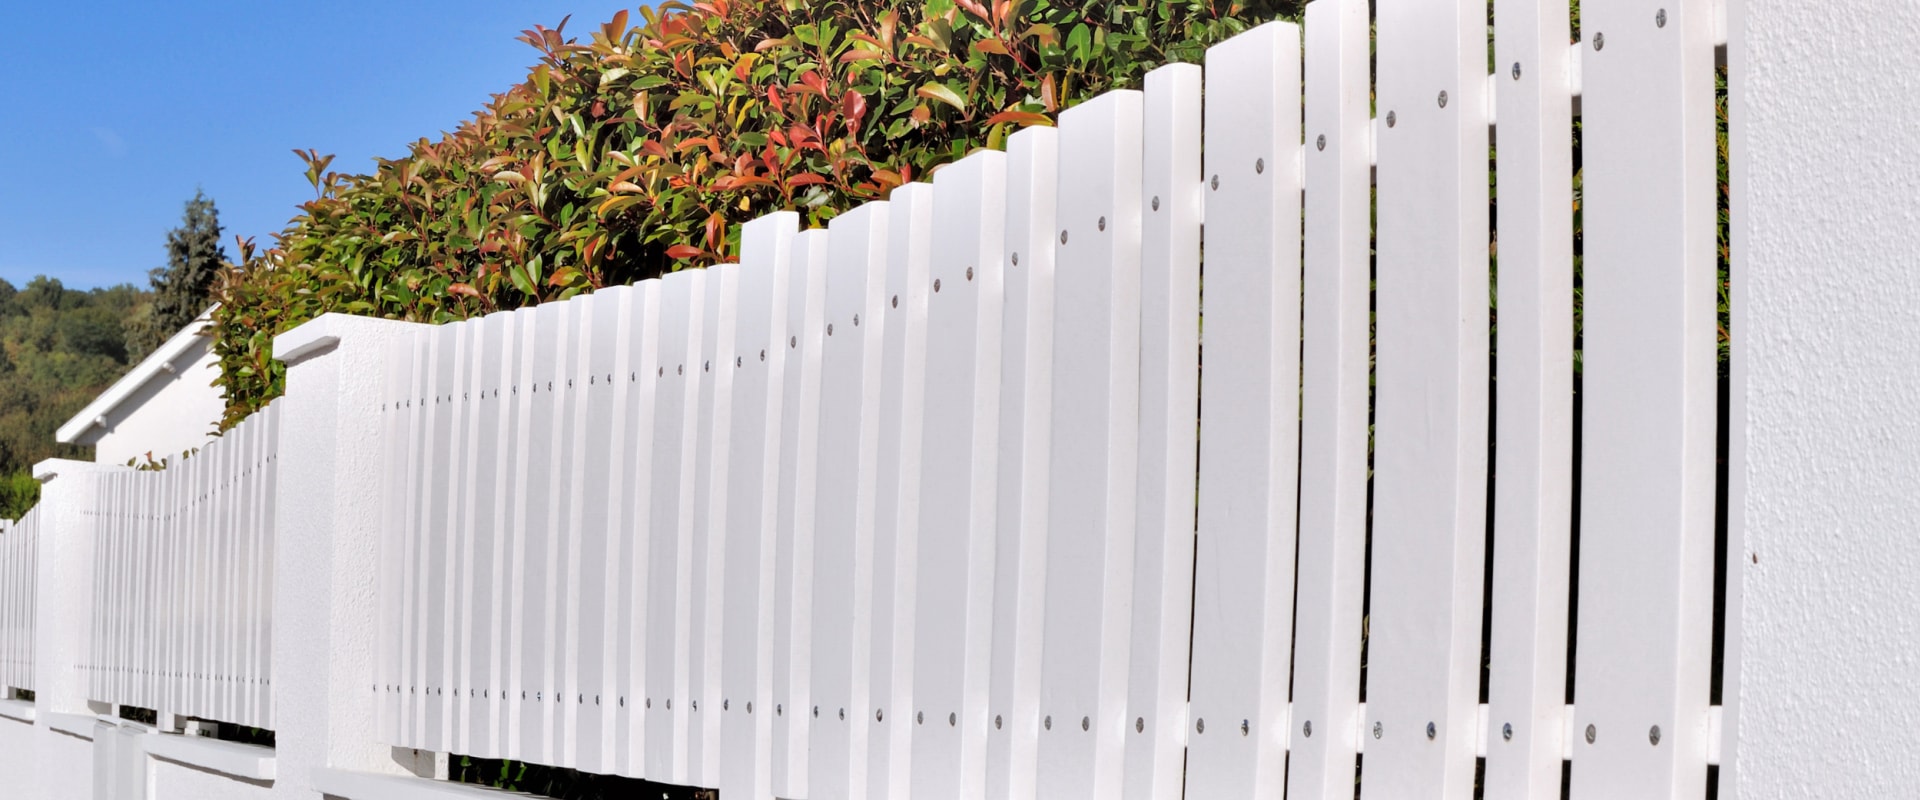 Tout ce que vous devez savoir sur les clôtures à mailles losangées recouvertes de vinyle blanc